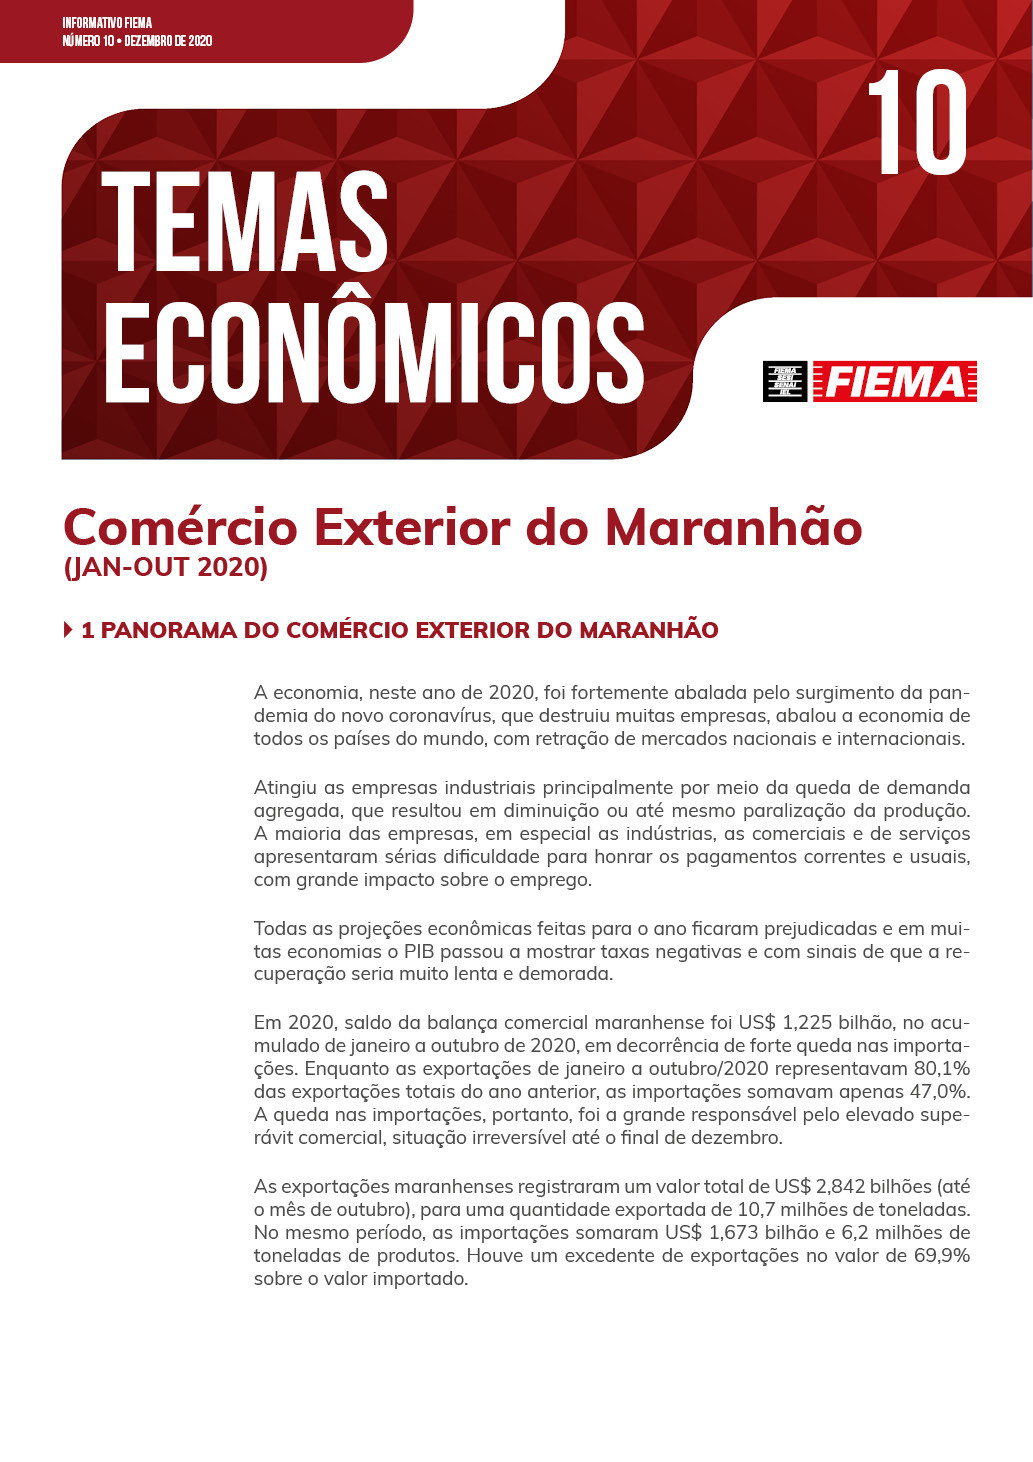 Comércio exterior do Maranhão